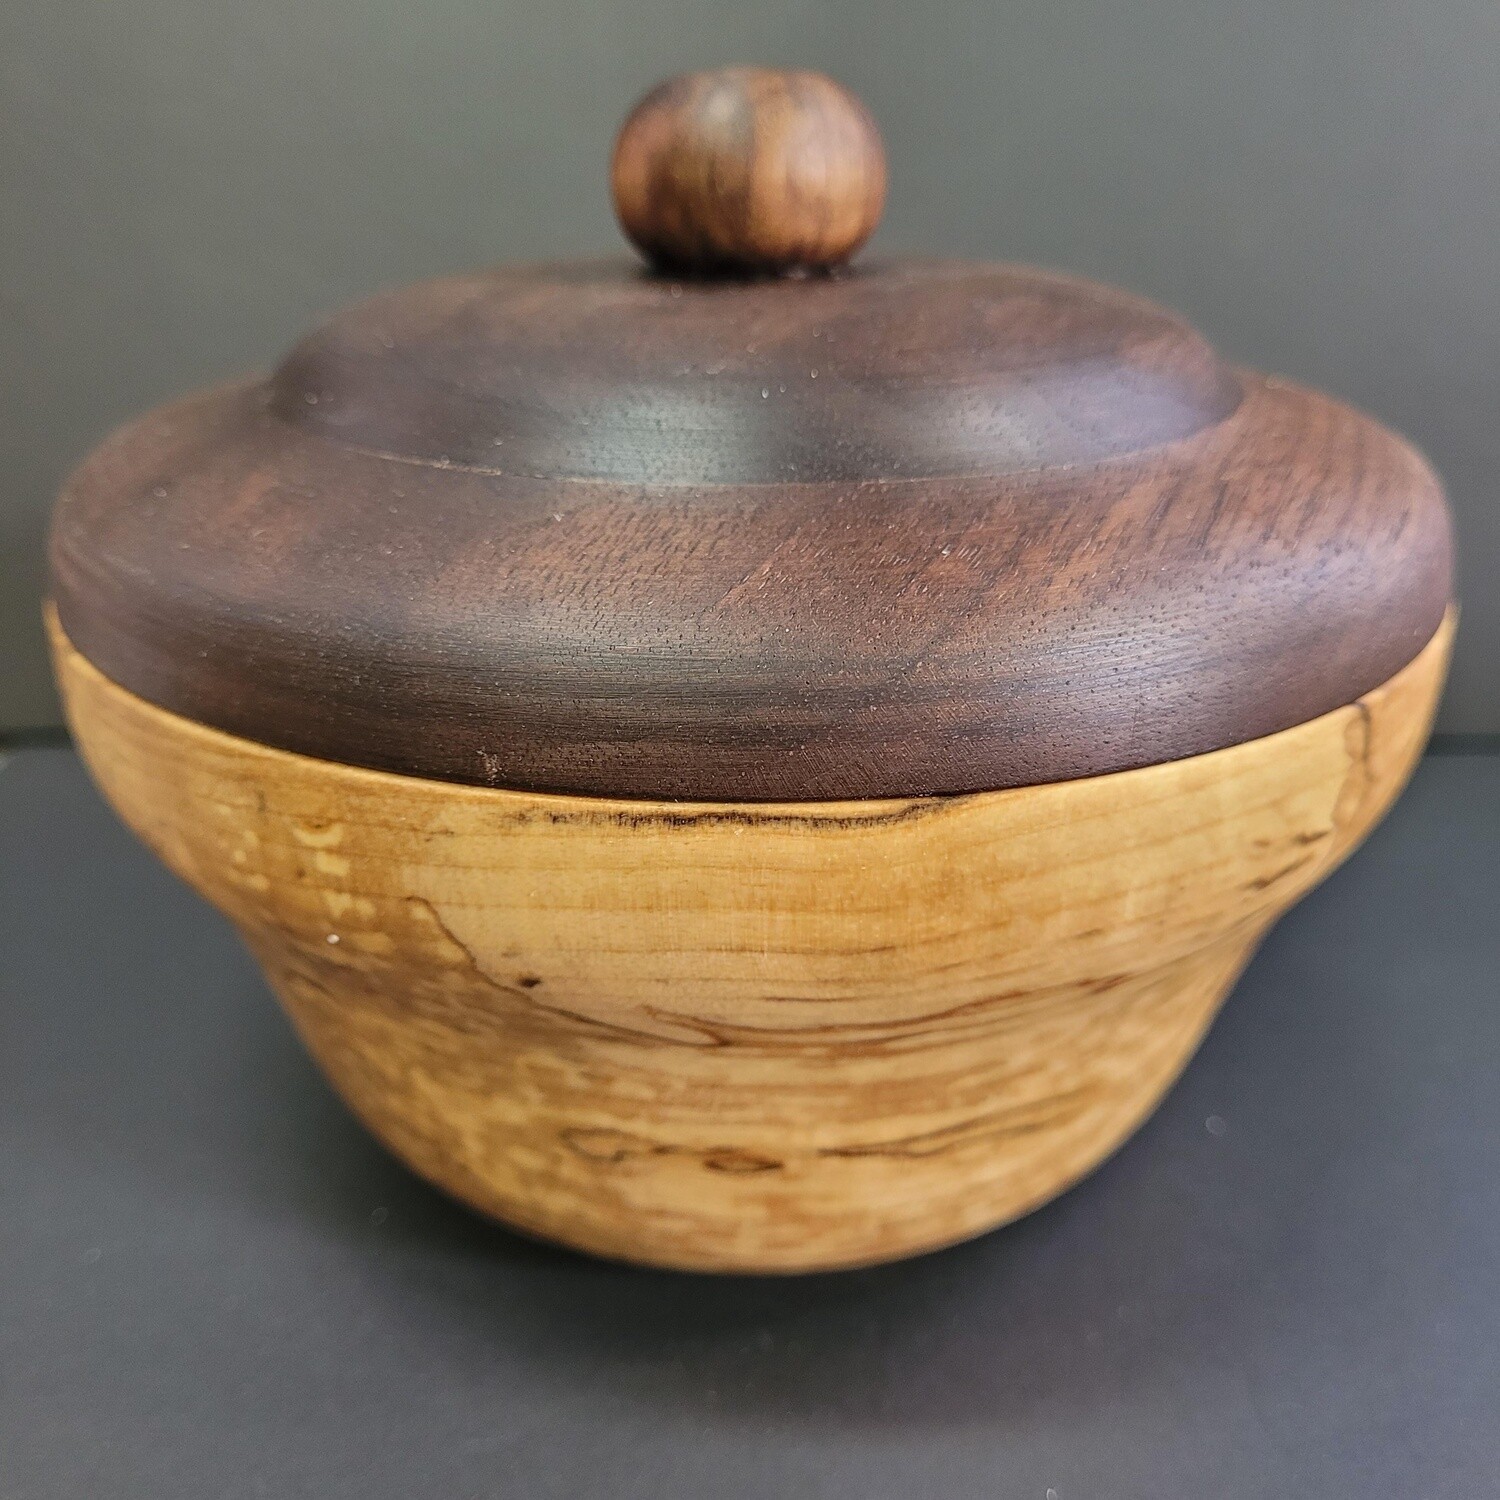 Small Maple round box with lid / Petite boite ronde en érable avec couvercle